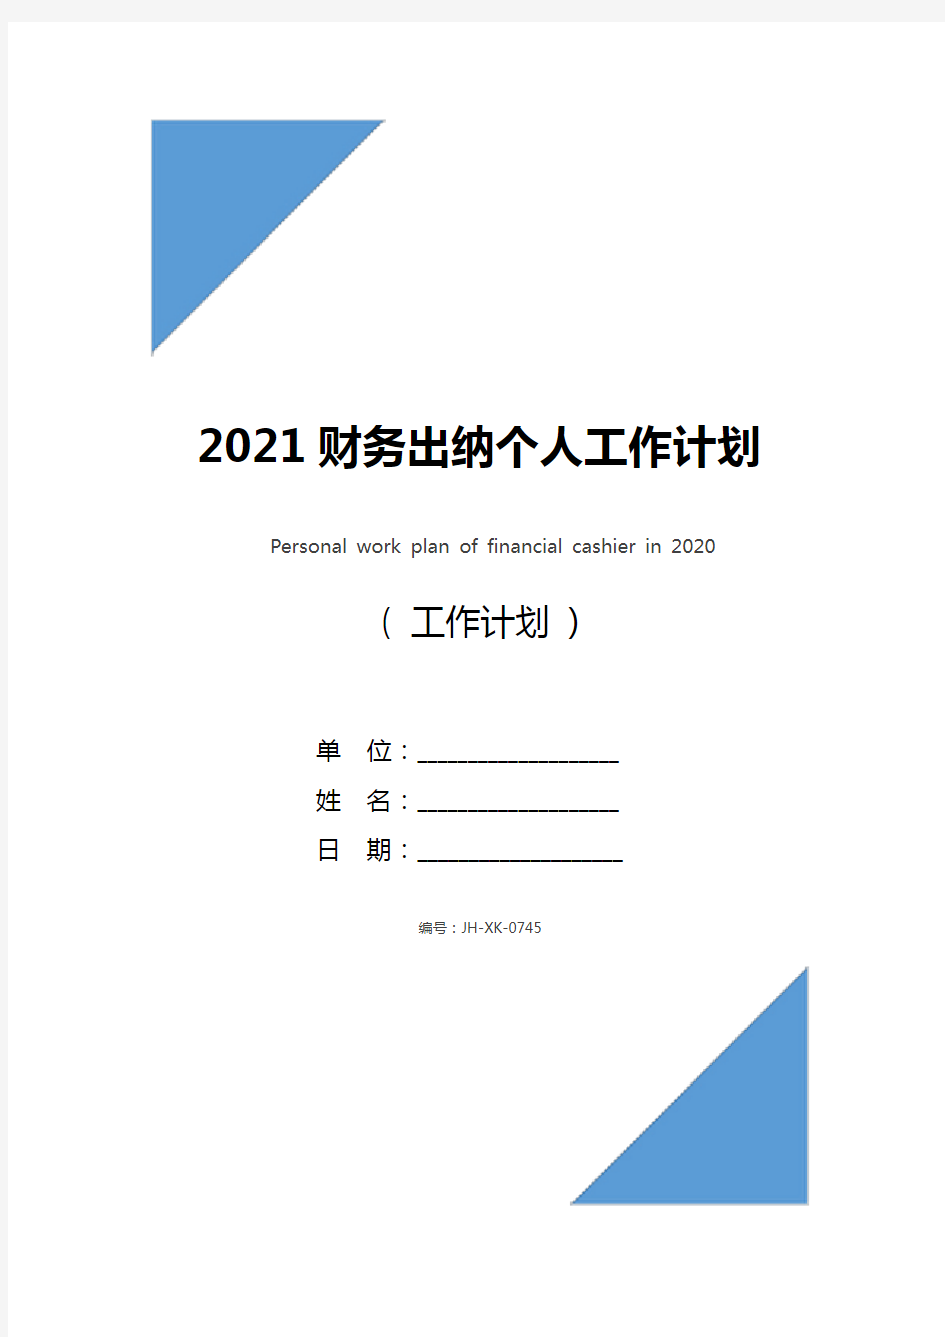 2021财务出纳个人工作计划(通用版)